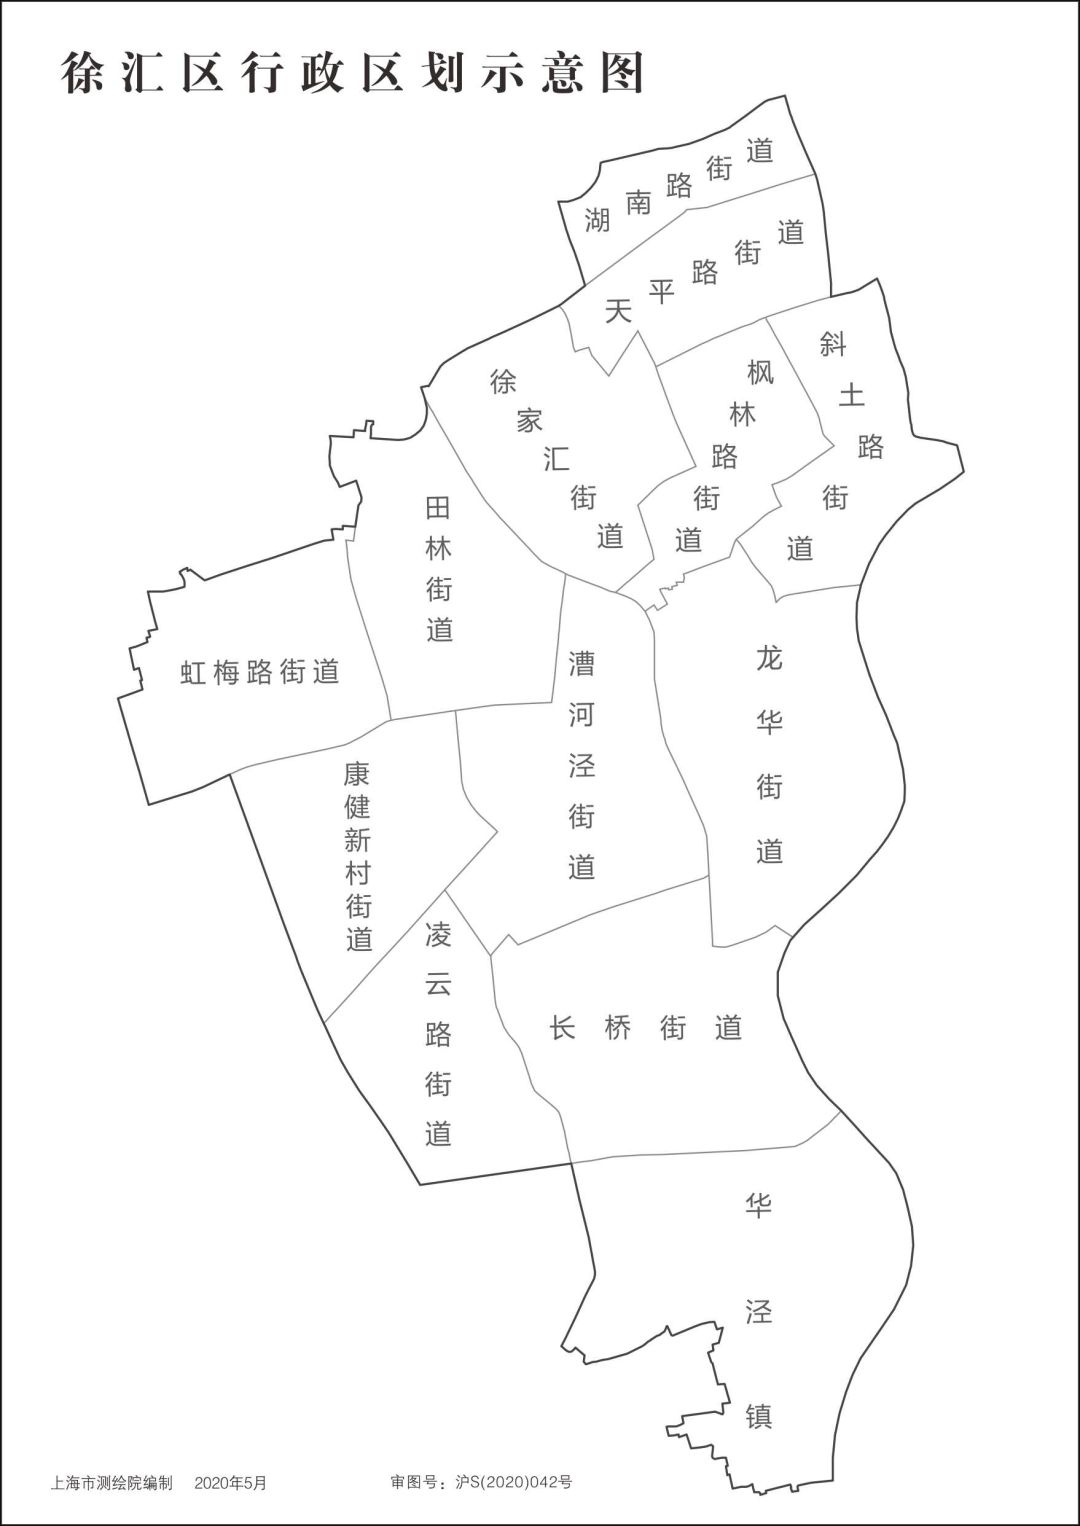 首页 资讯中心 最新政策 上海市包括16个区,分别是:黄浦区,徐汇区